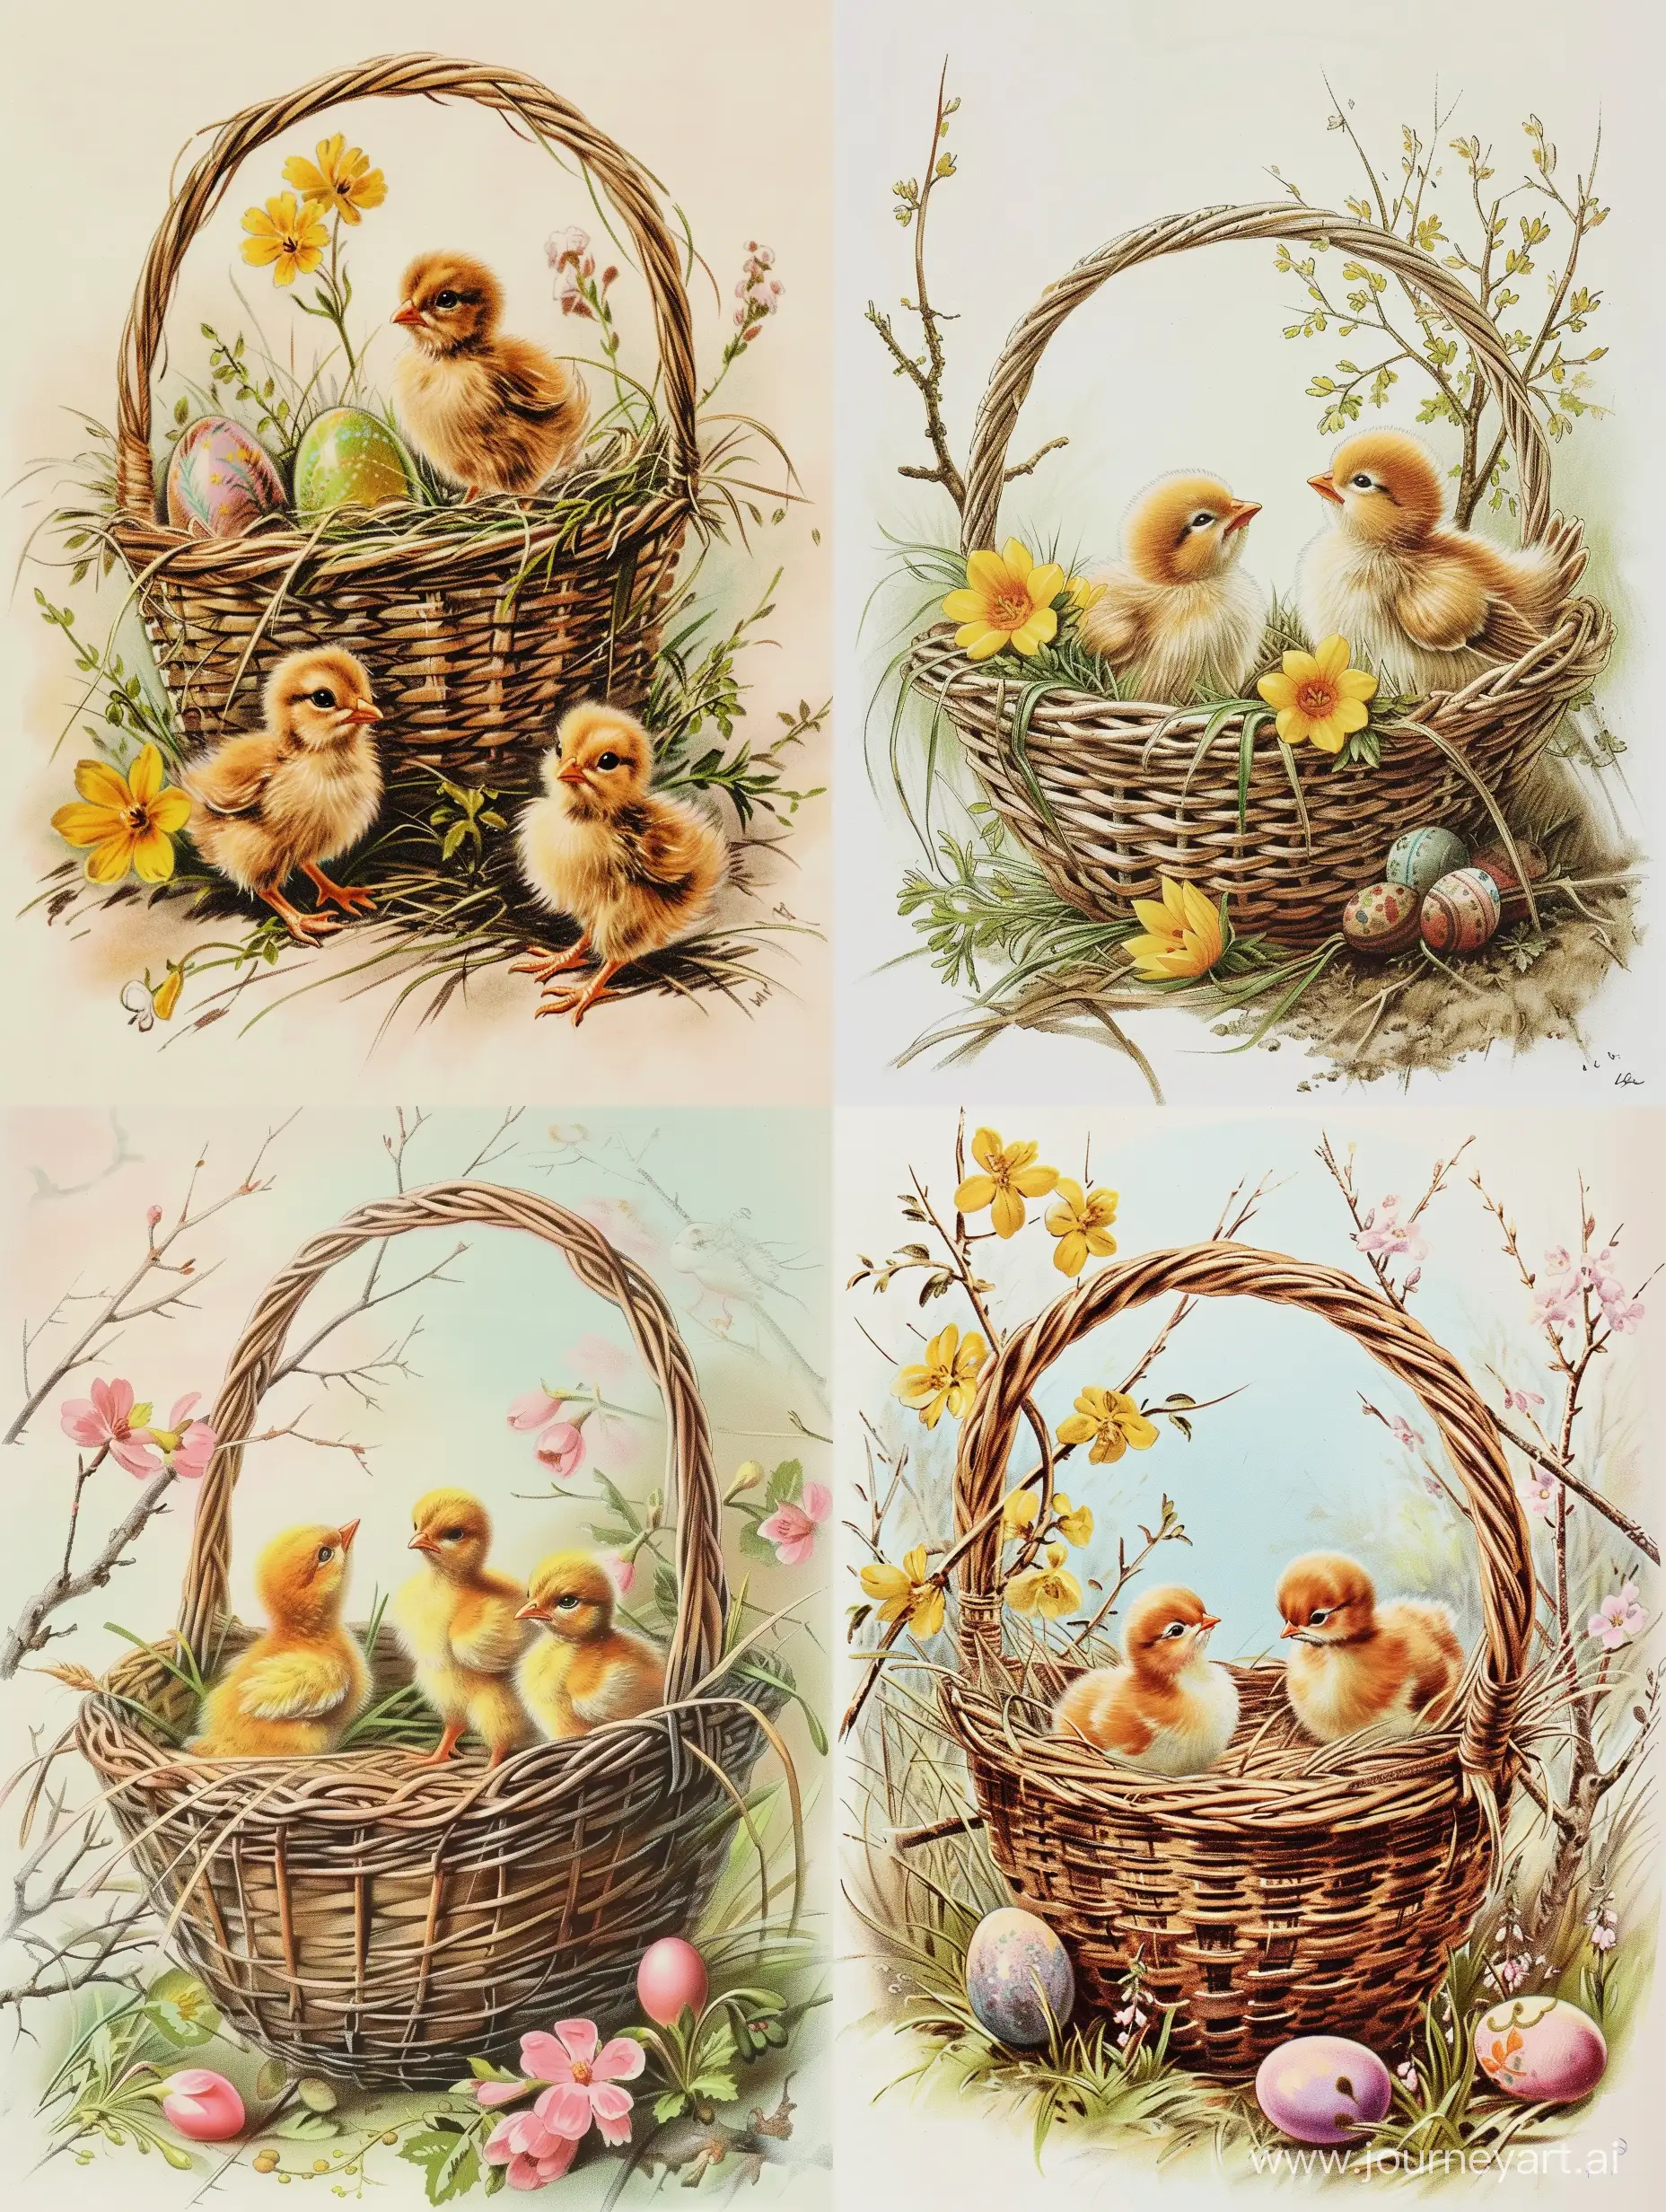 Пасхальная открытка с корочкой и цыплятами. Стиль рисунка российских художников 19 века.